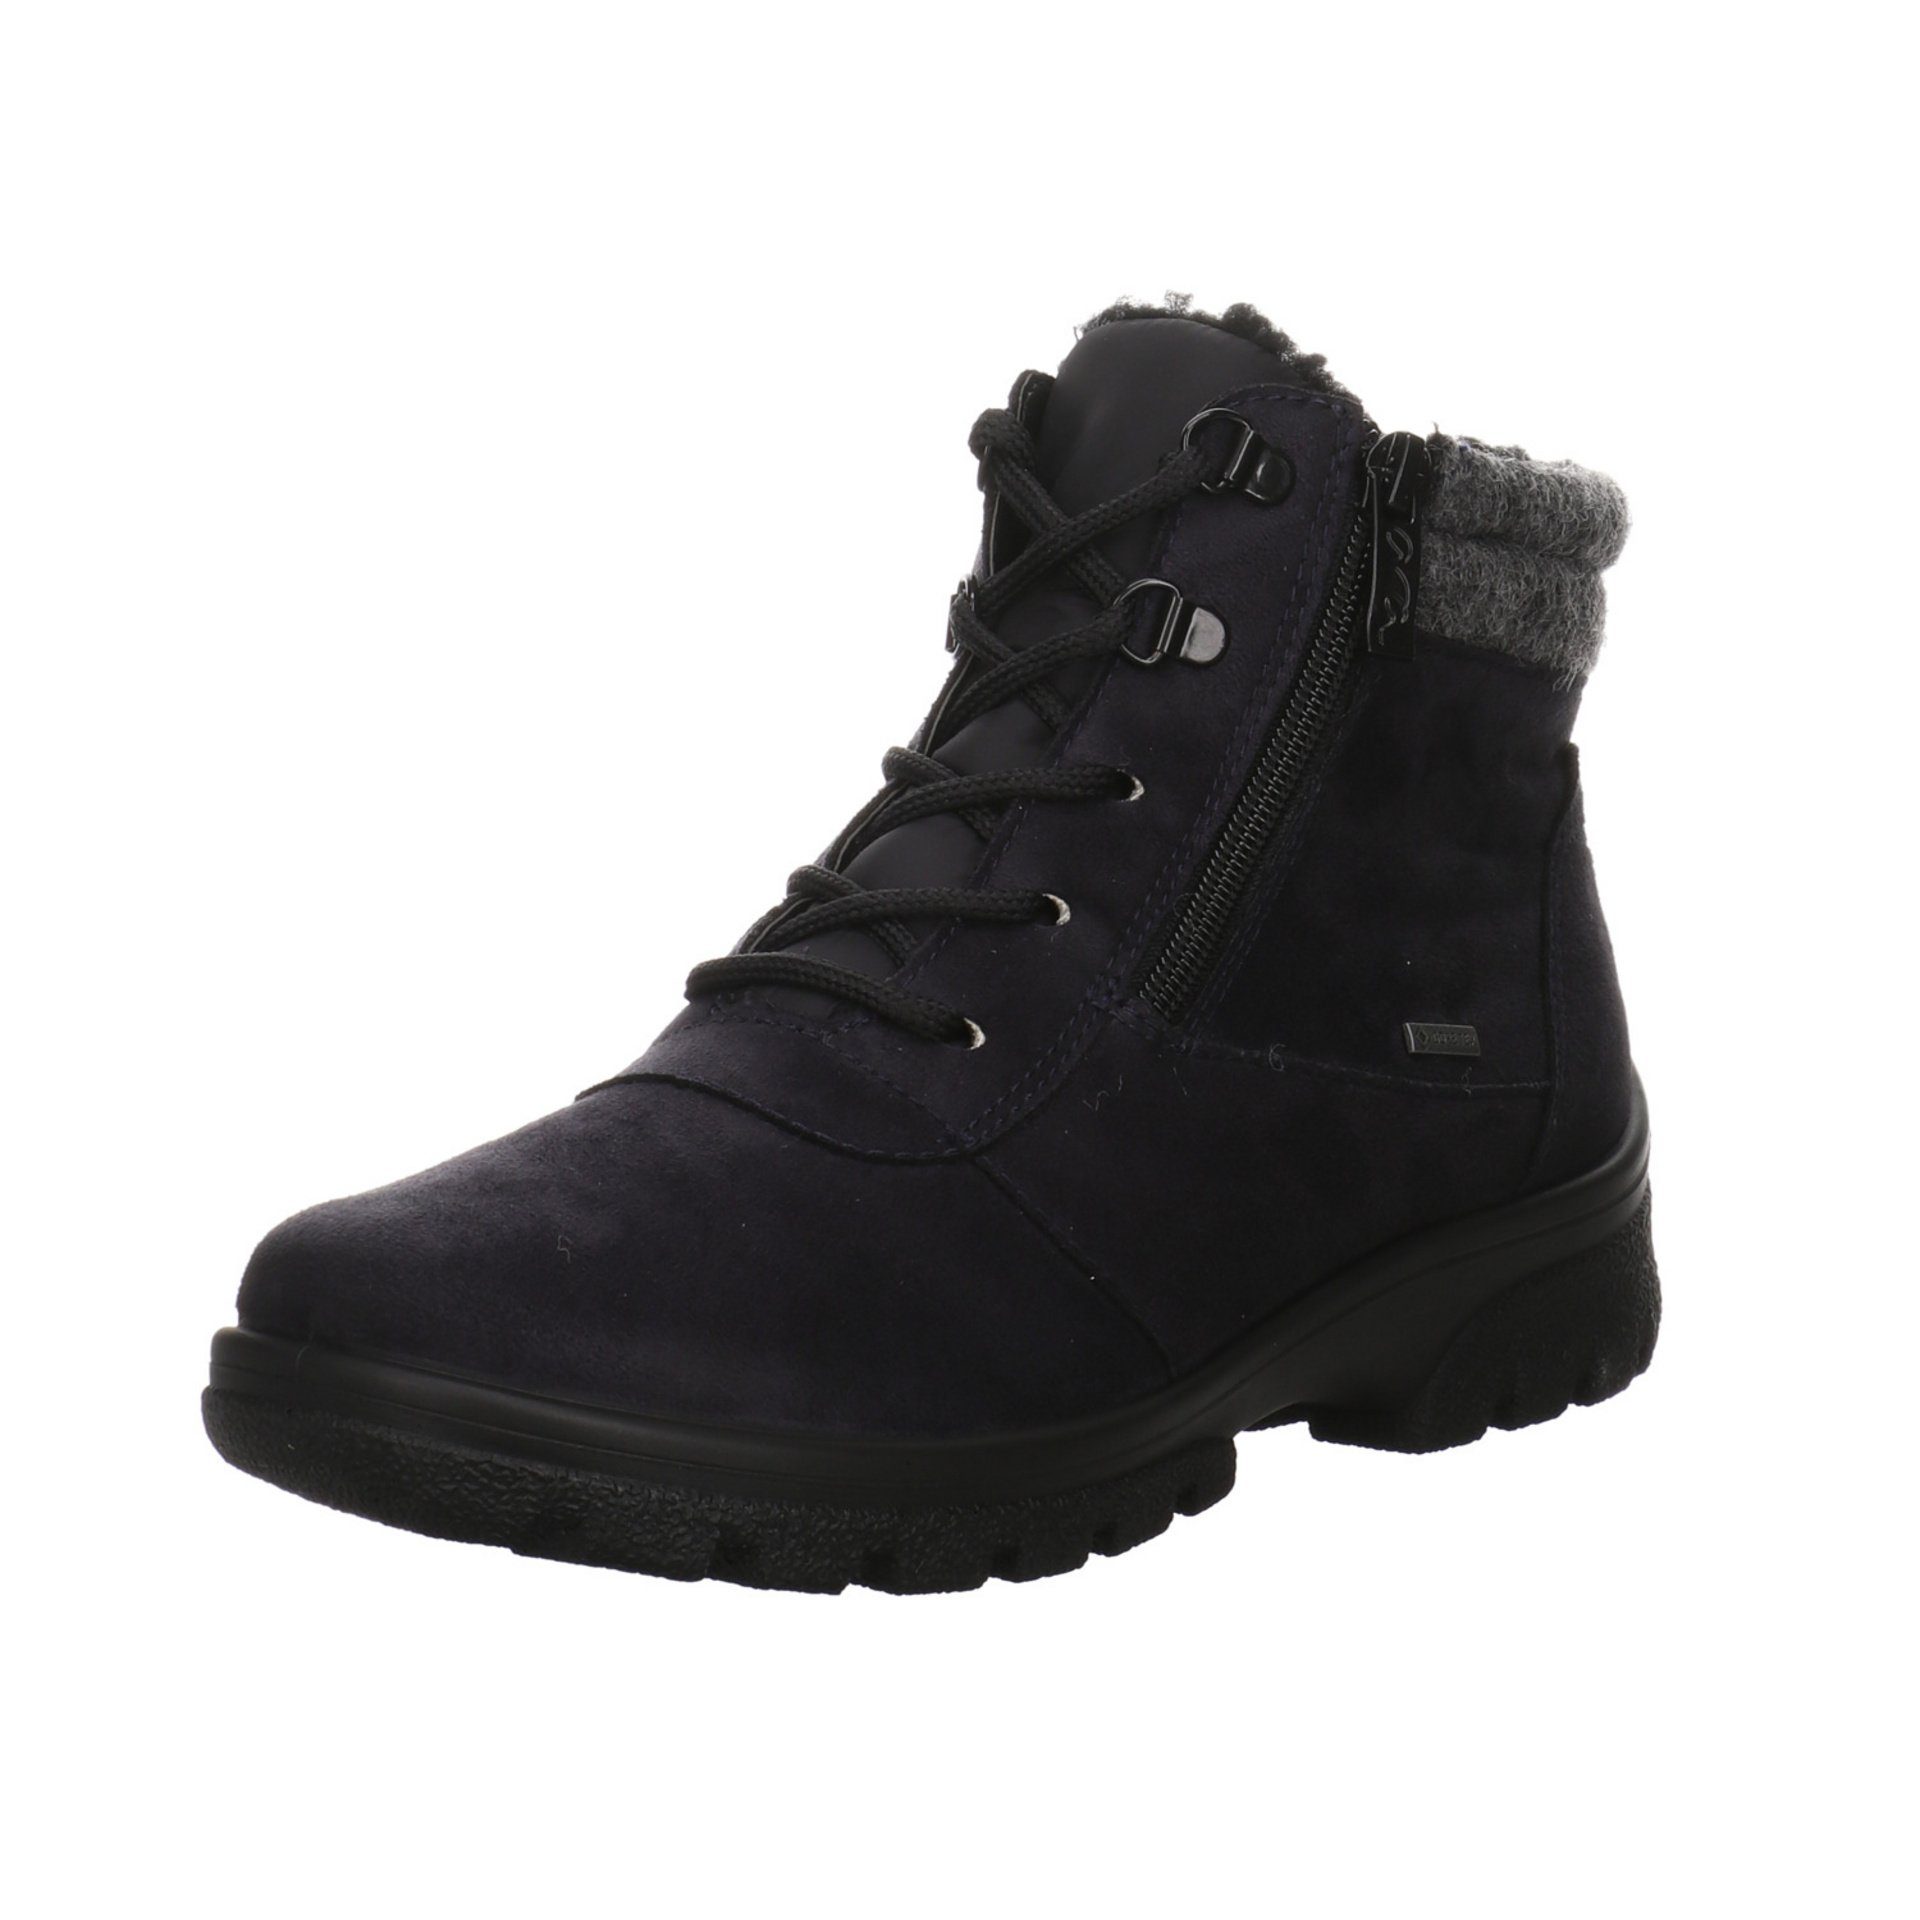 Ara Damen Snowboots Schuhe Saas-Fee Boots Snowboots blau/grau/schwarz Leder-/Textilkombination